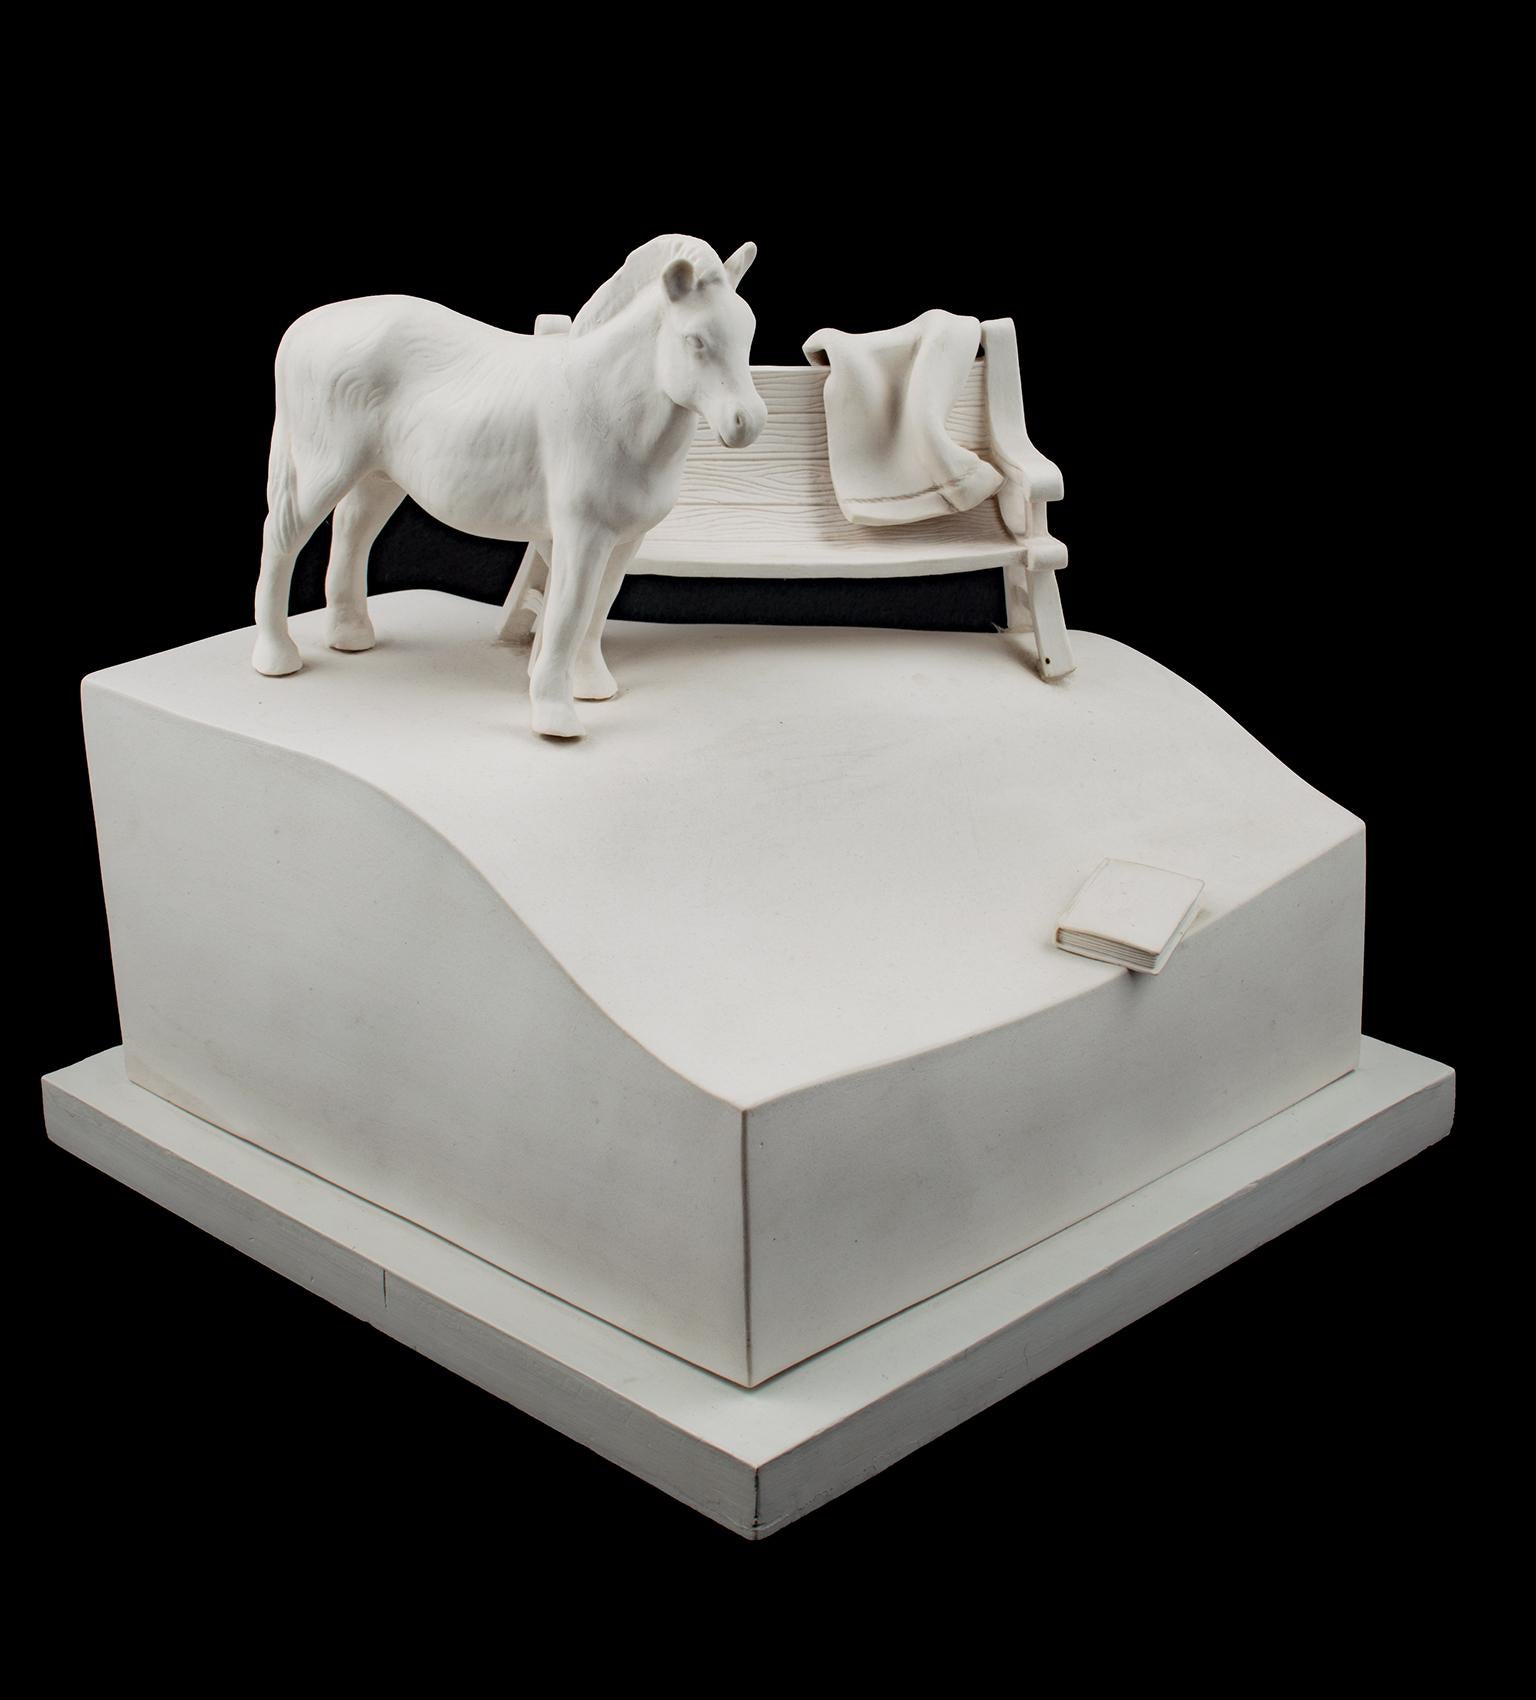 "Off Center" ist eine originelle Porzellanskulptur von Susan Potts. Es zeigt ein kleines Pferd, das neben einer Parkbank steht und ein kleines Buch von der unebenen, hügeligen Oberfläche rutscht. 

19" x 16" x 16" Kunst

Susan Potts ist eine in